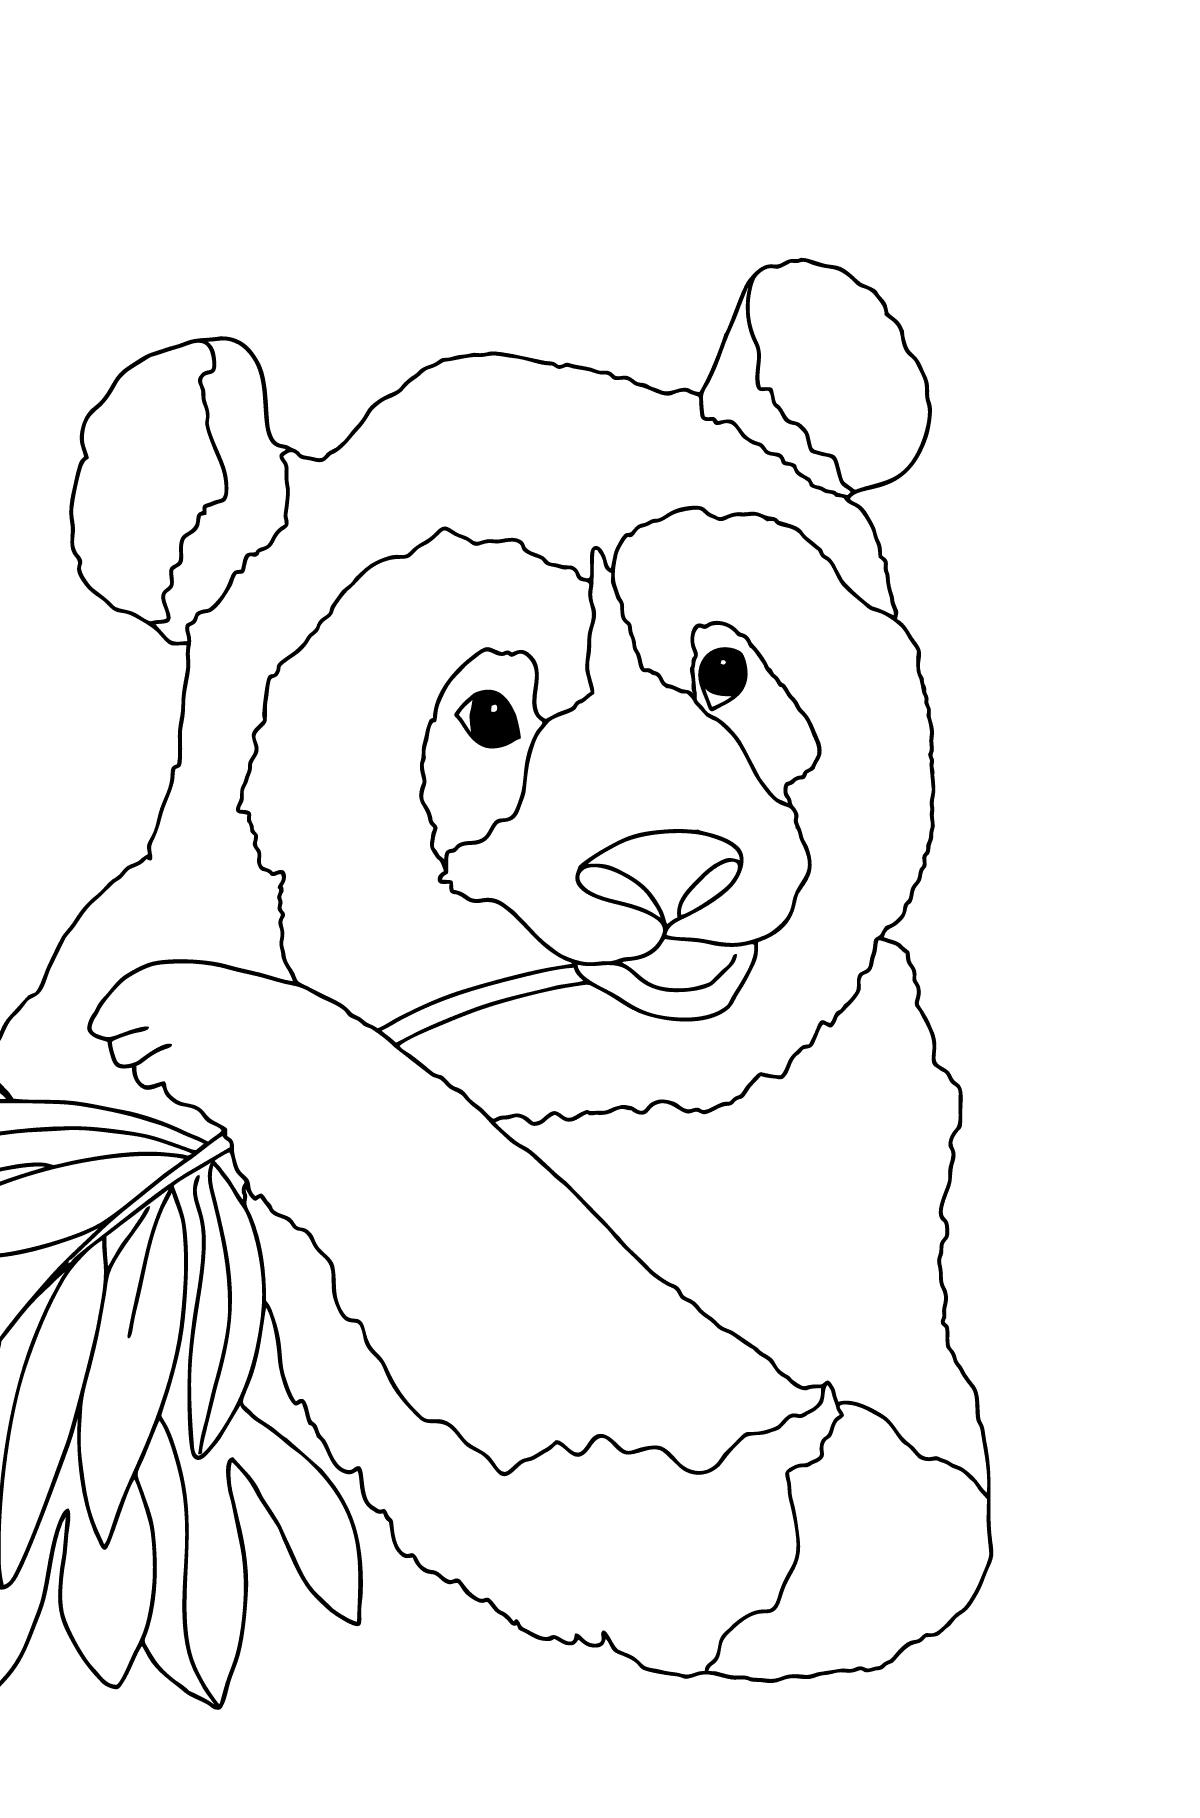 Dibujo para Colorear - Un Panda está Comiendo Tallos y Hojas de Bambú - Colorear para Niños